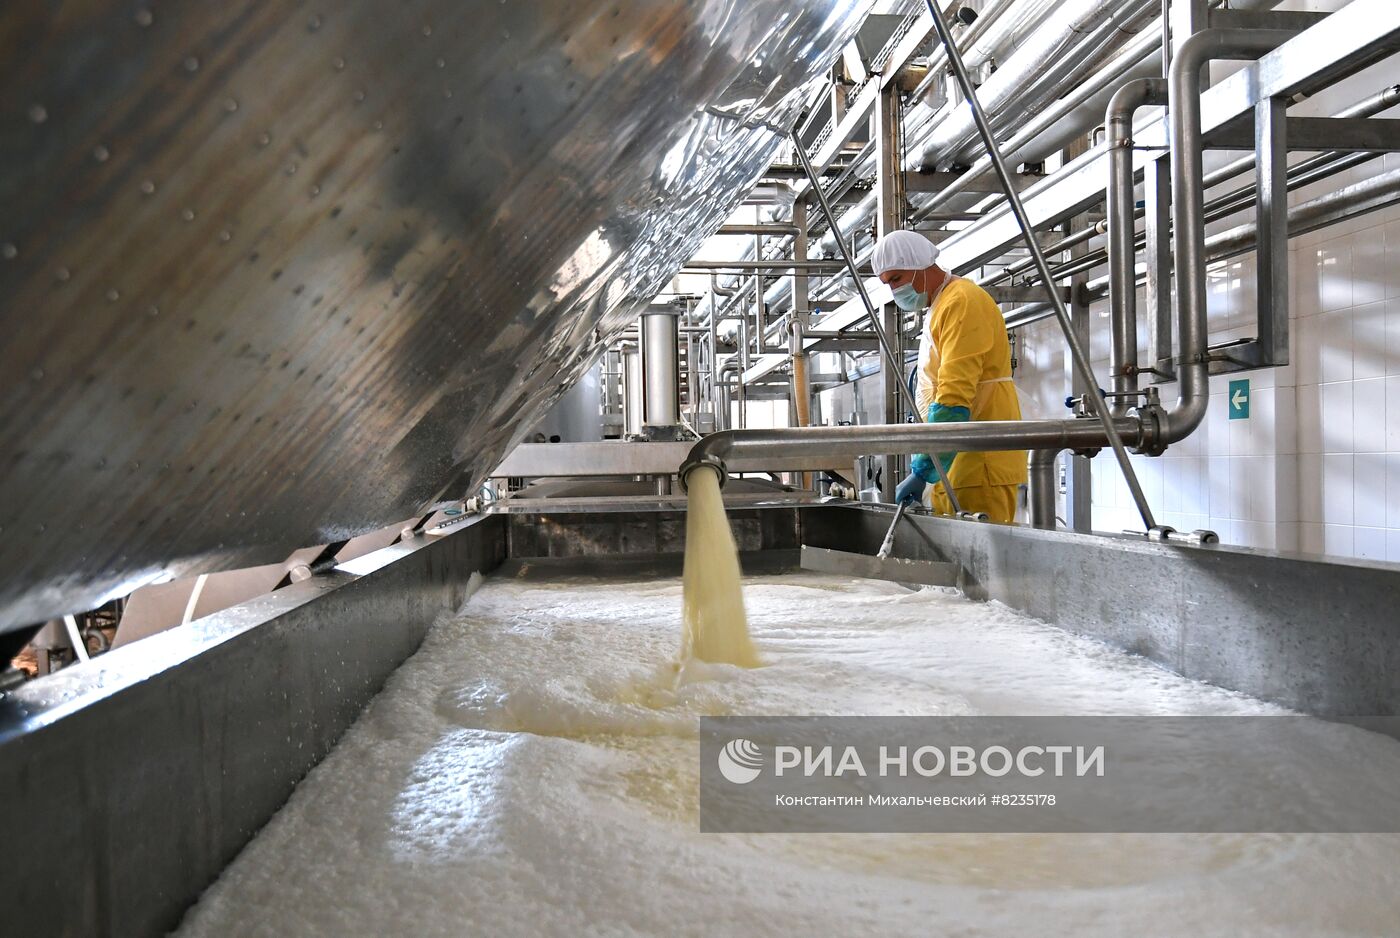 Предприятие по переработке молока в Крыму